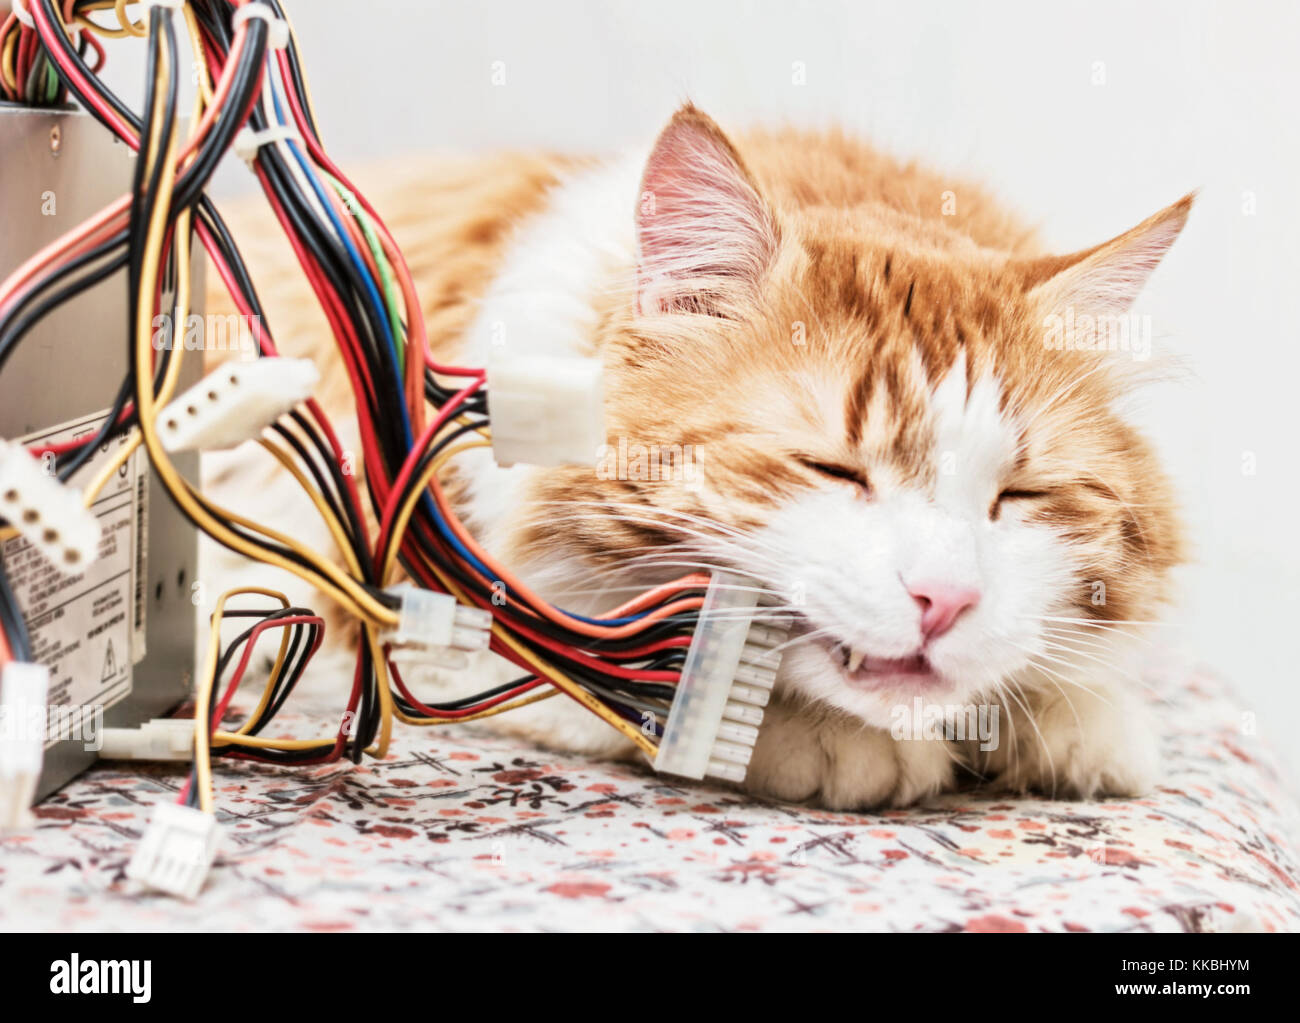 Nach rote Katze und Computer Kabel in Träumen Stockfoto